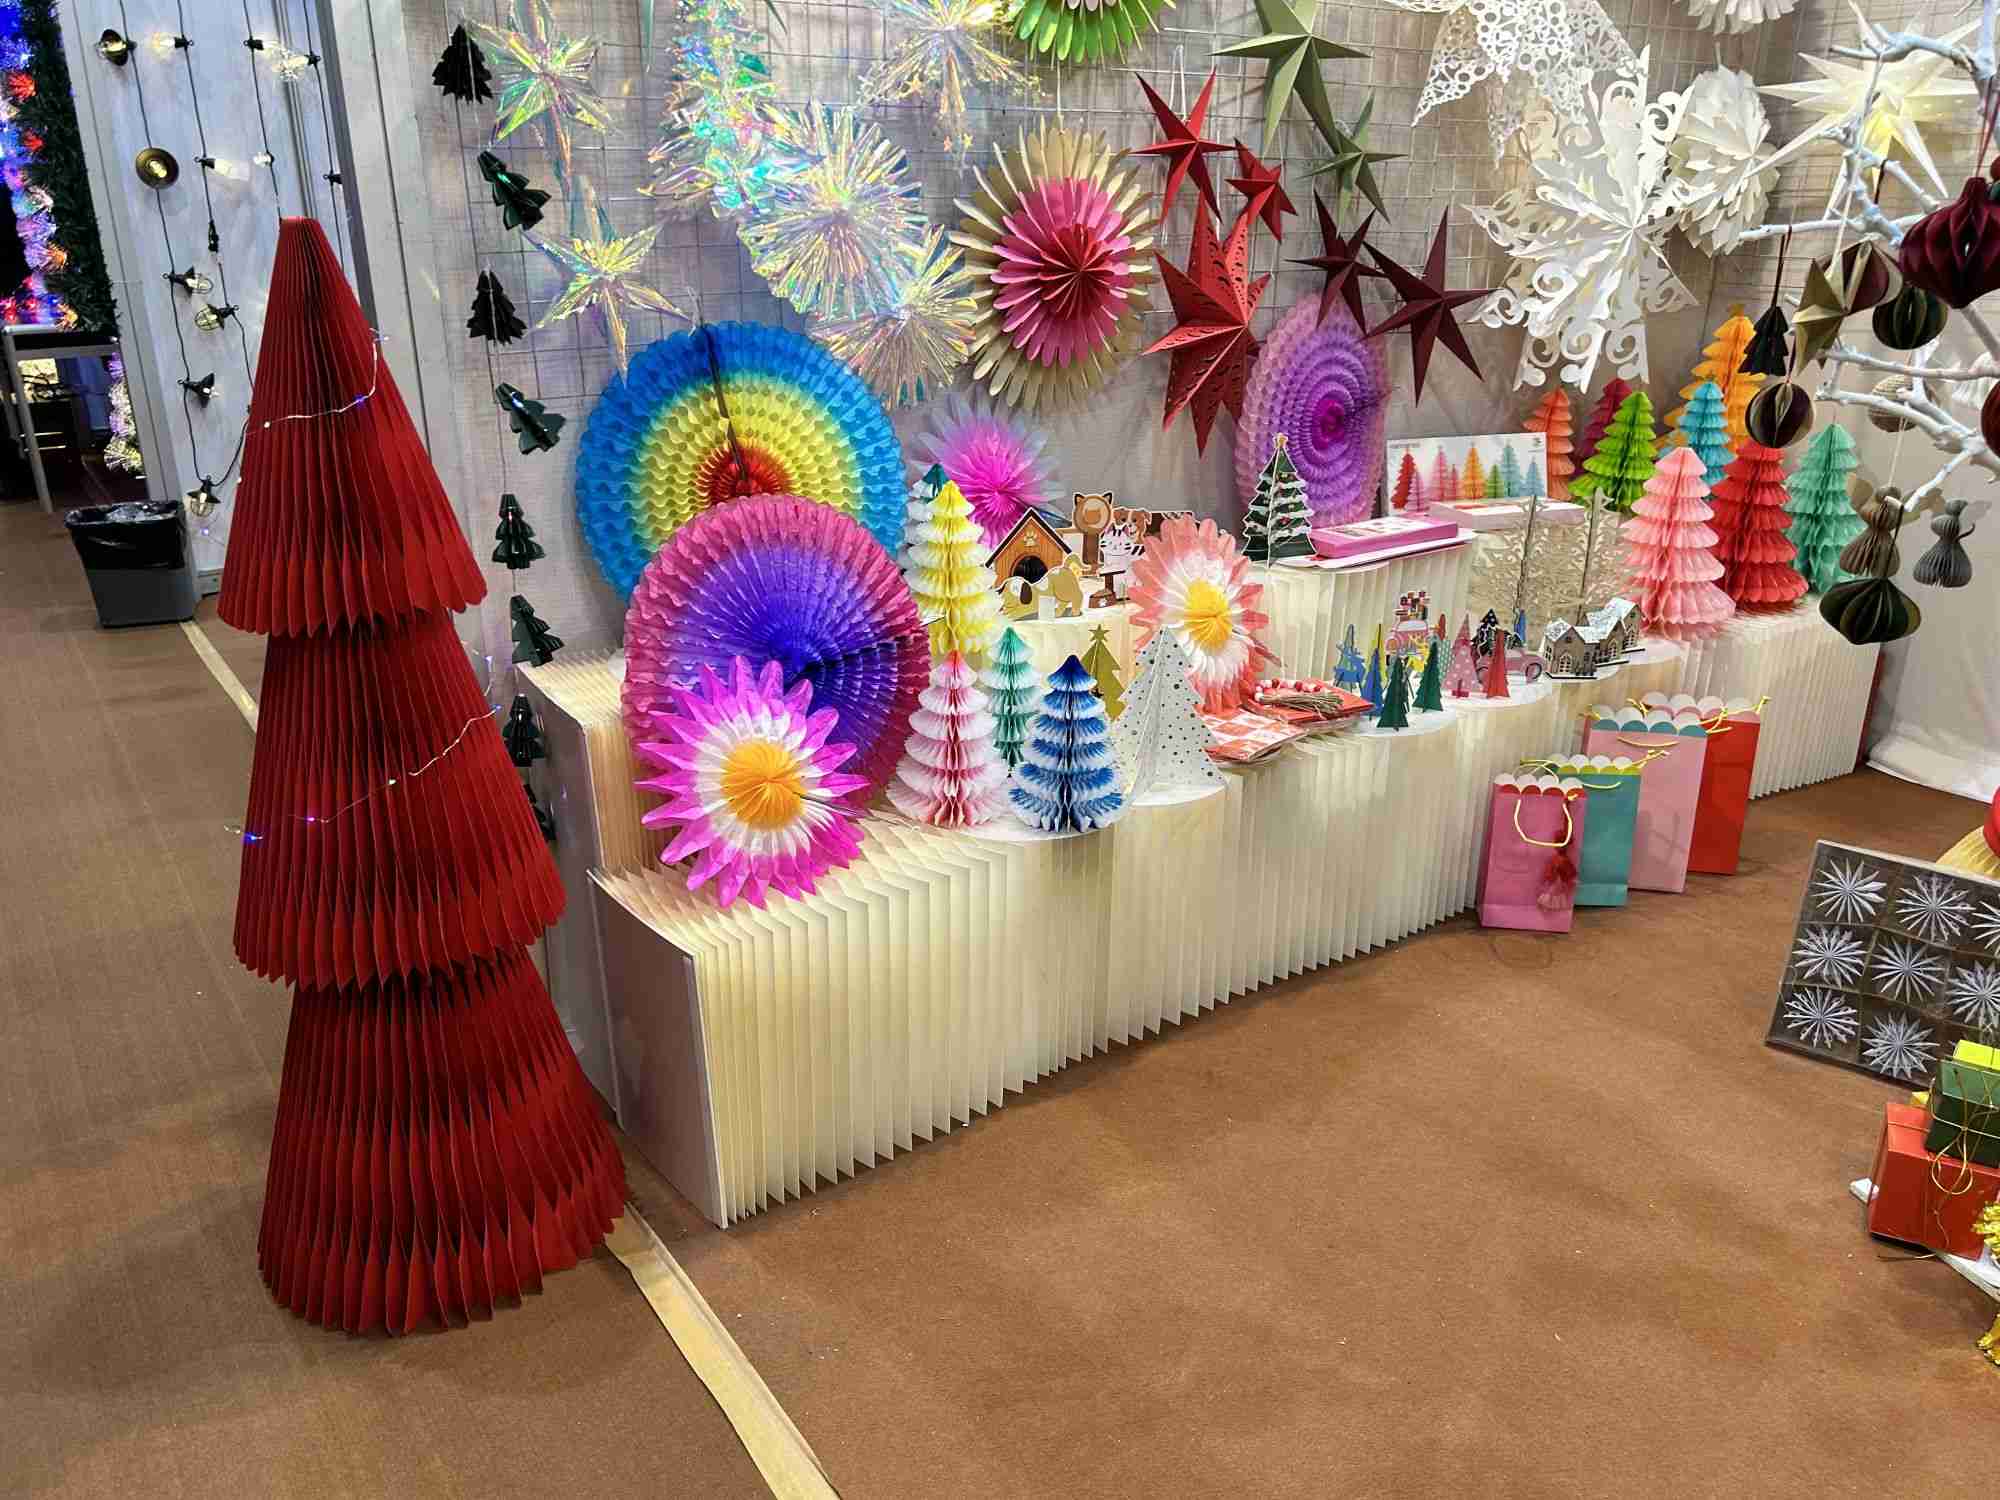 Canton Fair Exhibition Party and Christmas Decor